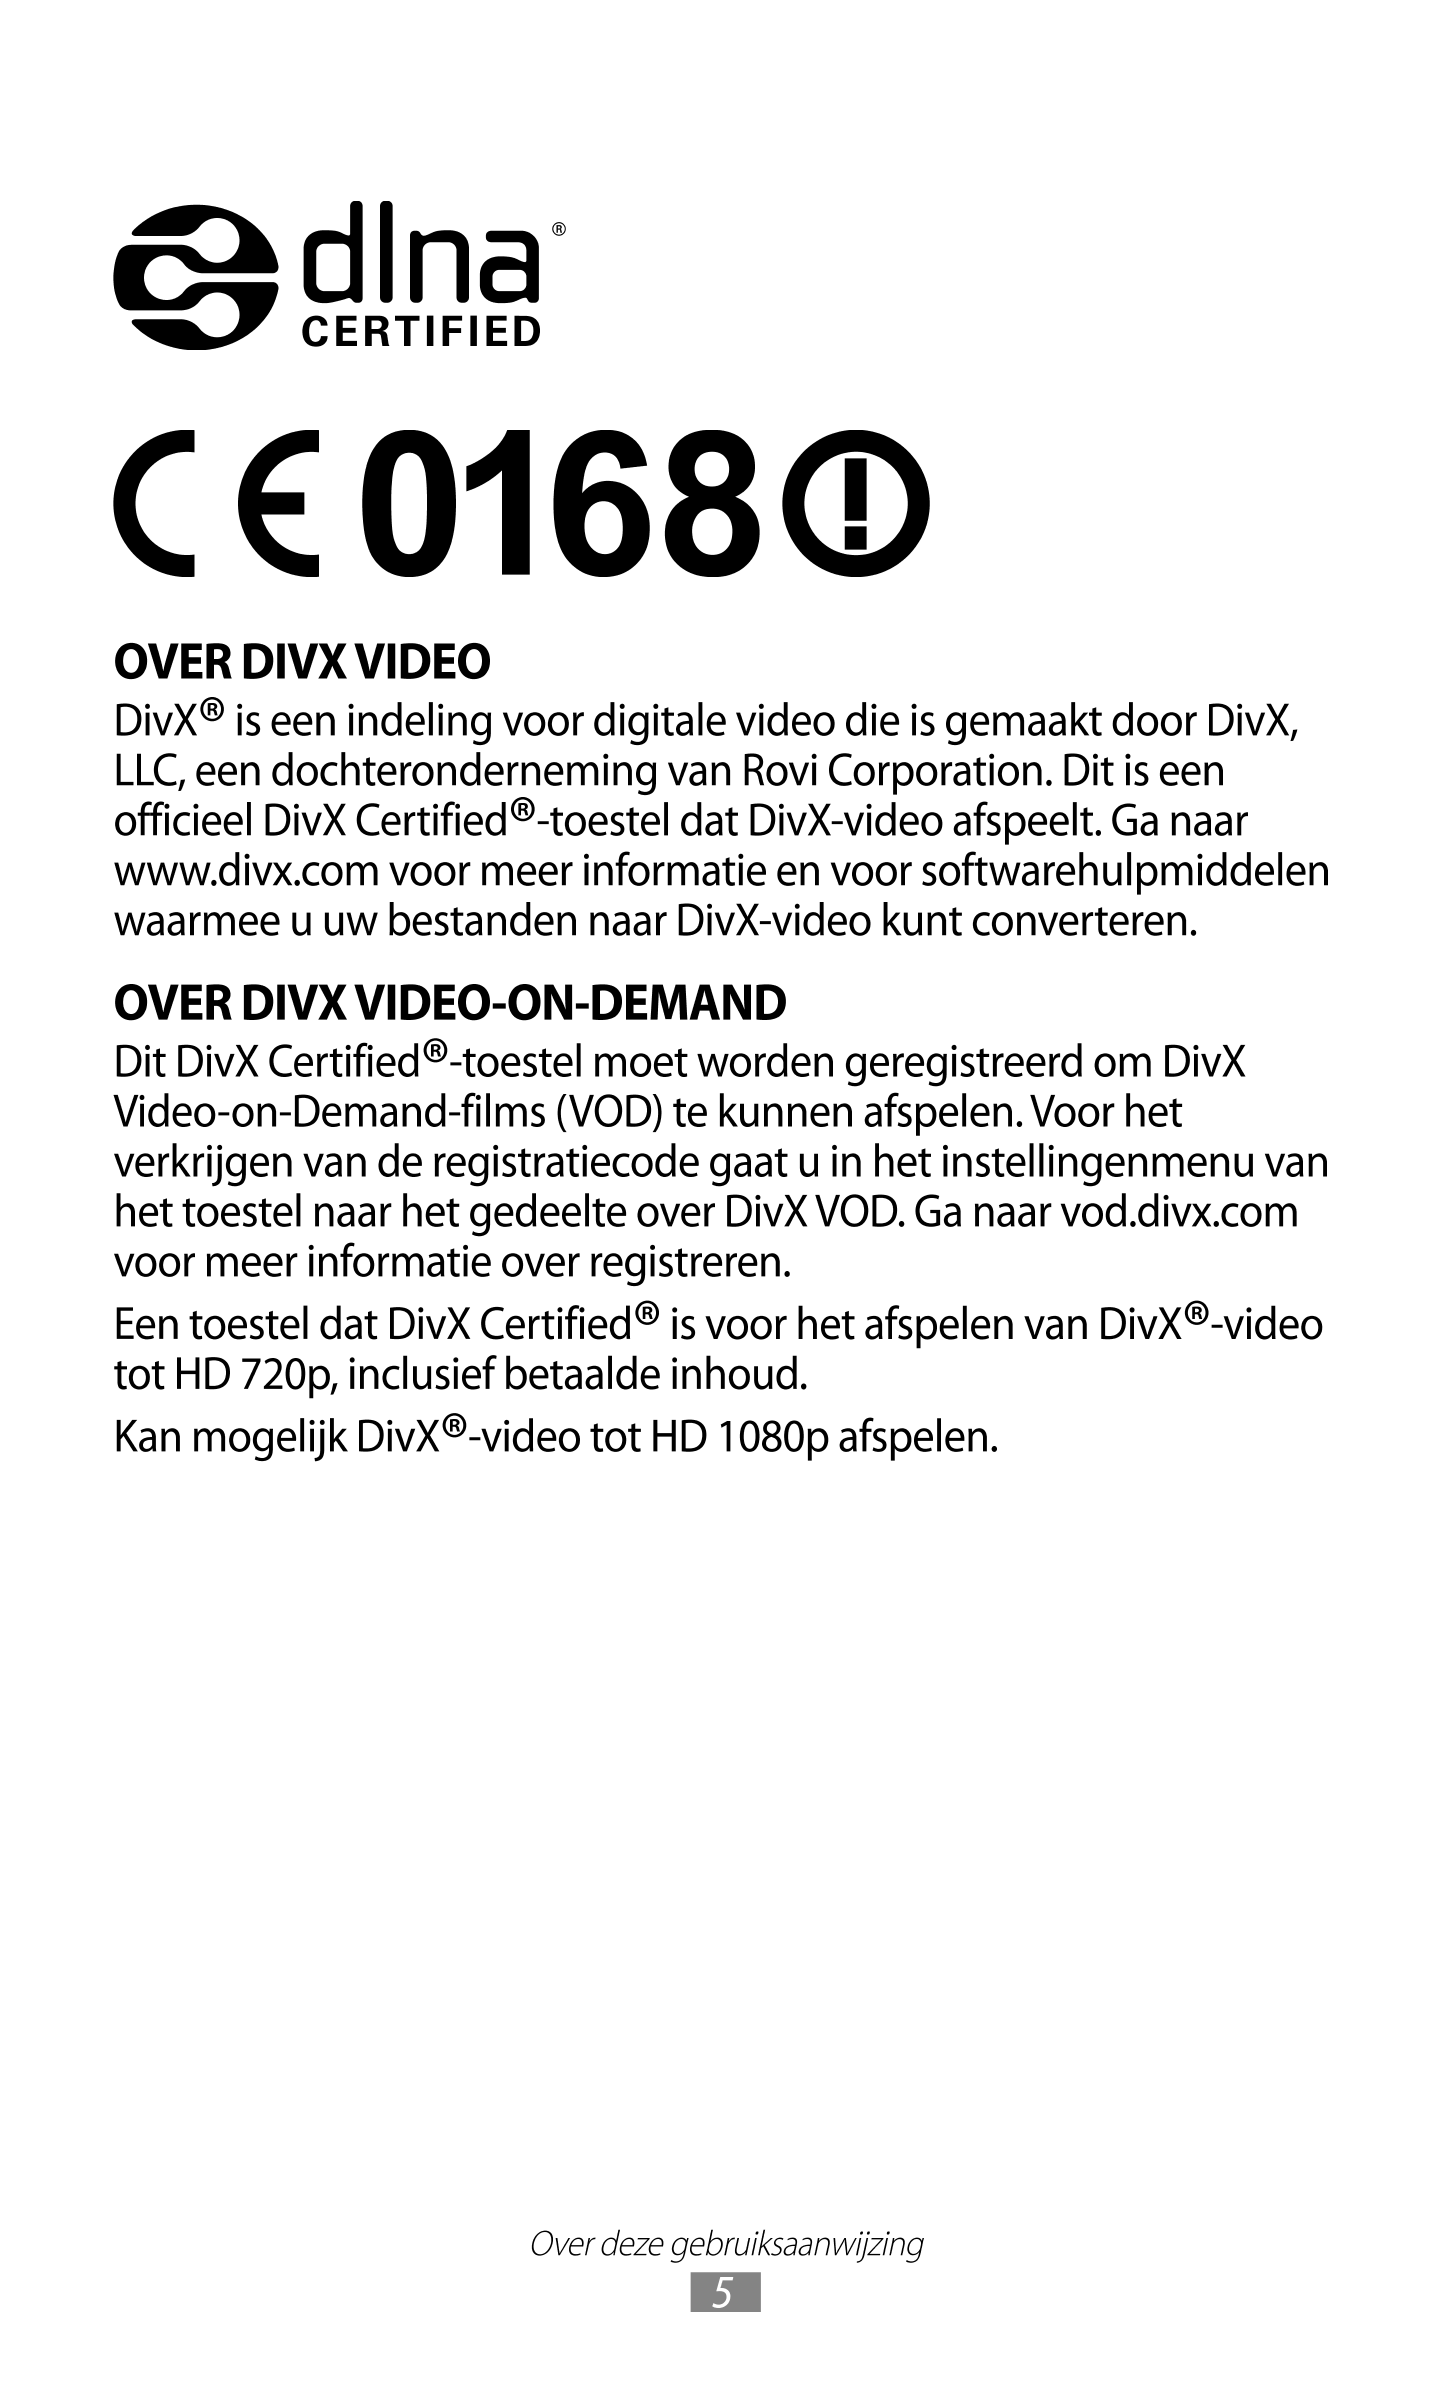 OVER DIVX VIDEO
DivX® is een indeling voor digitale video die is gemaakt door DivX, 
LLC, een dochteronderneming van Rovi Corpor